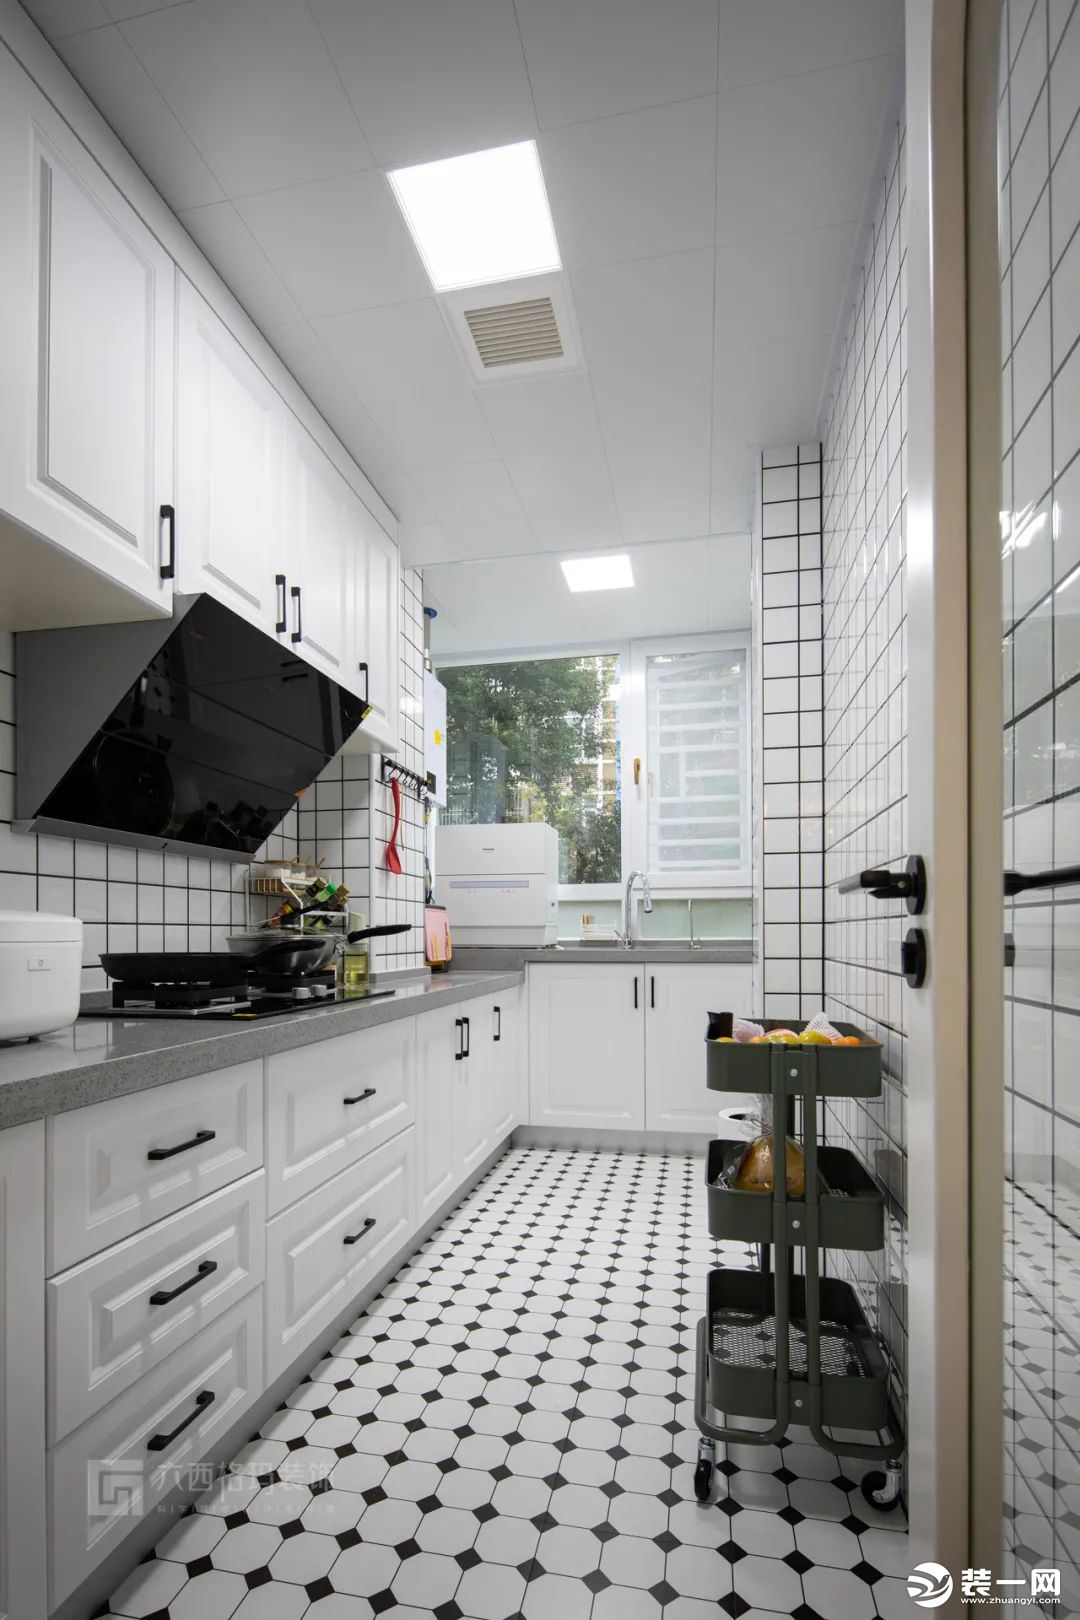 在L型的厨房布局里使用白色视觉上不压抑，显得更明亮宽敞。惬意的早晨，走进充满阳光的白色厨房里，心情瞬